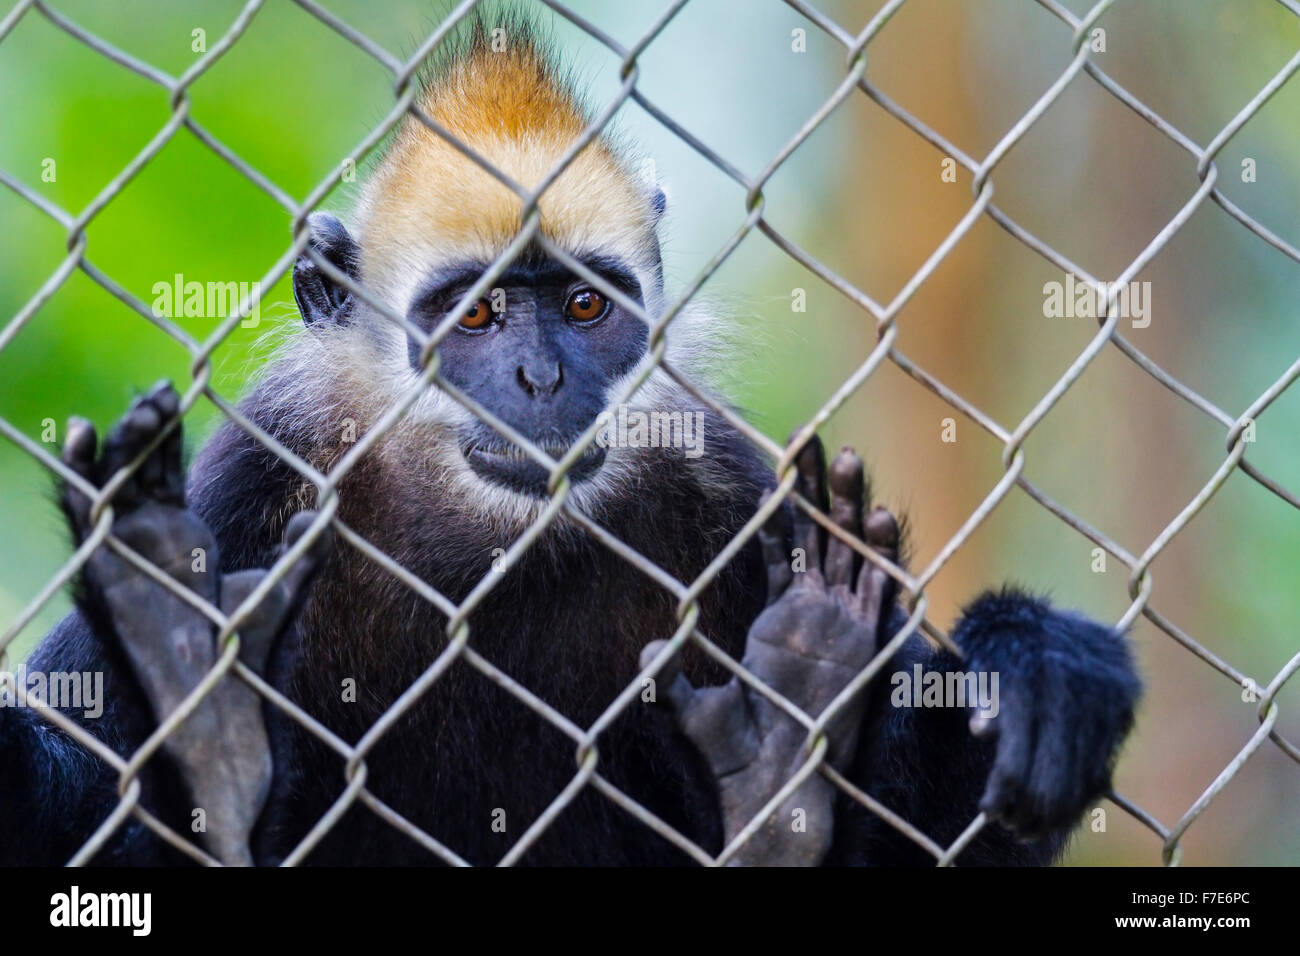 Captive Cat Ba langur (Trachypithecus p. poliocephalus), Endangered Primate Rescue Centre, Cuc Phuong National Park, Vietnam Stock Photo